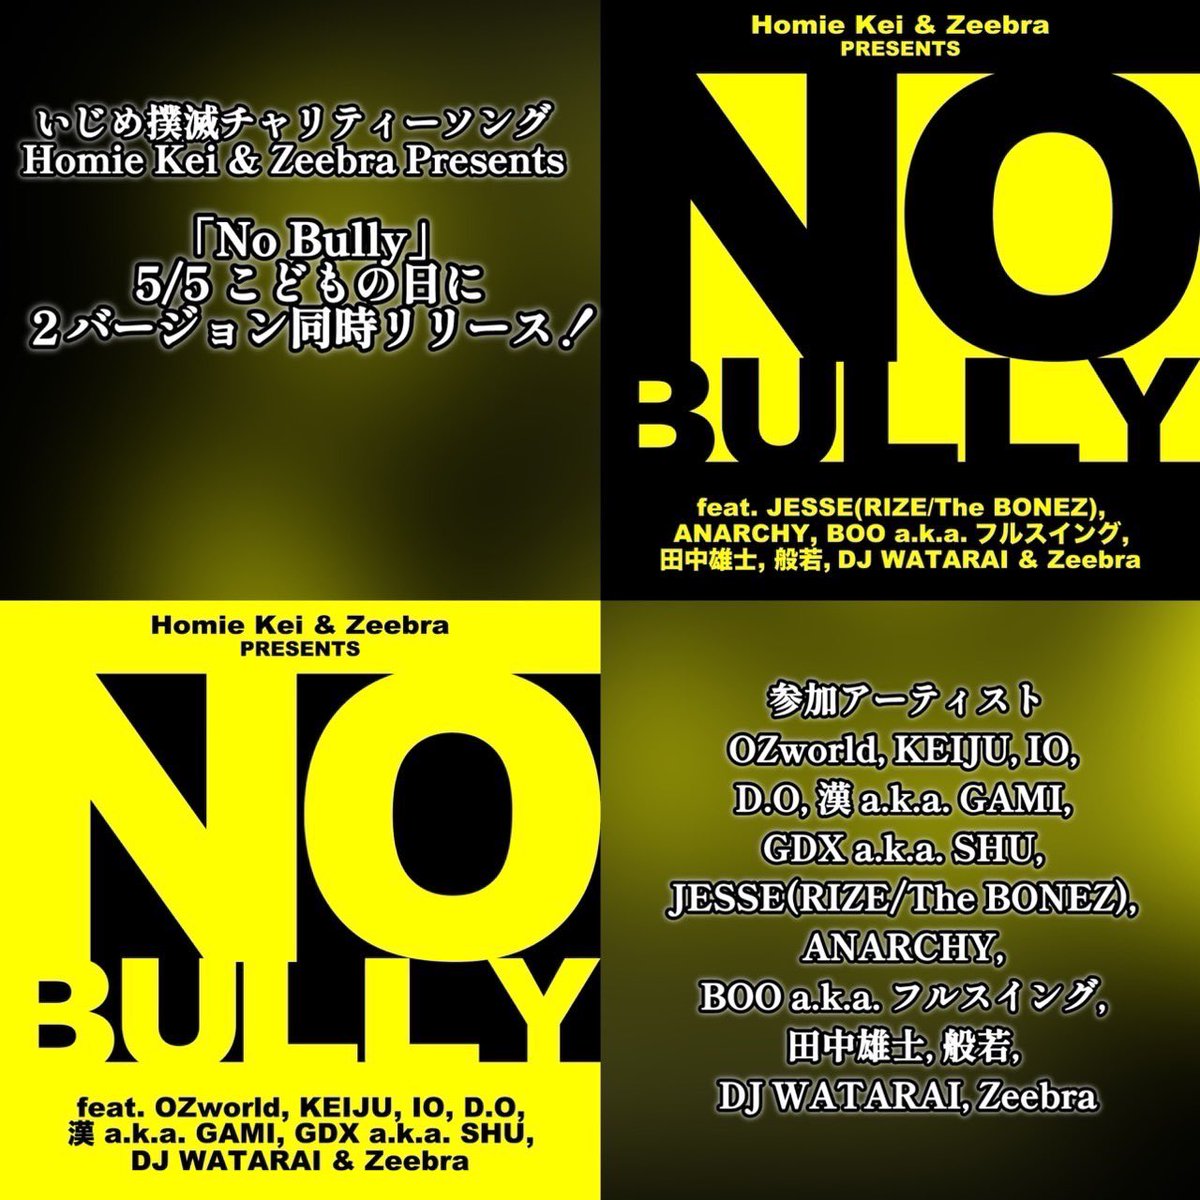 いじめ撲滅チャリティーソング
Homie Kei & Zeebra Presents
「No Bully」
5/5 こどもの日に２バージョン同時リリース！

linkco.re/RzbmsRG7
linkco.re/Cmzqh92C
#いじめ撲滅 #NoBully